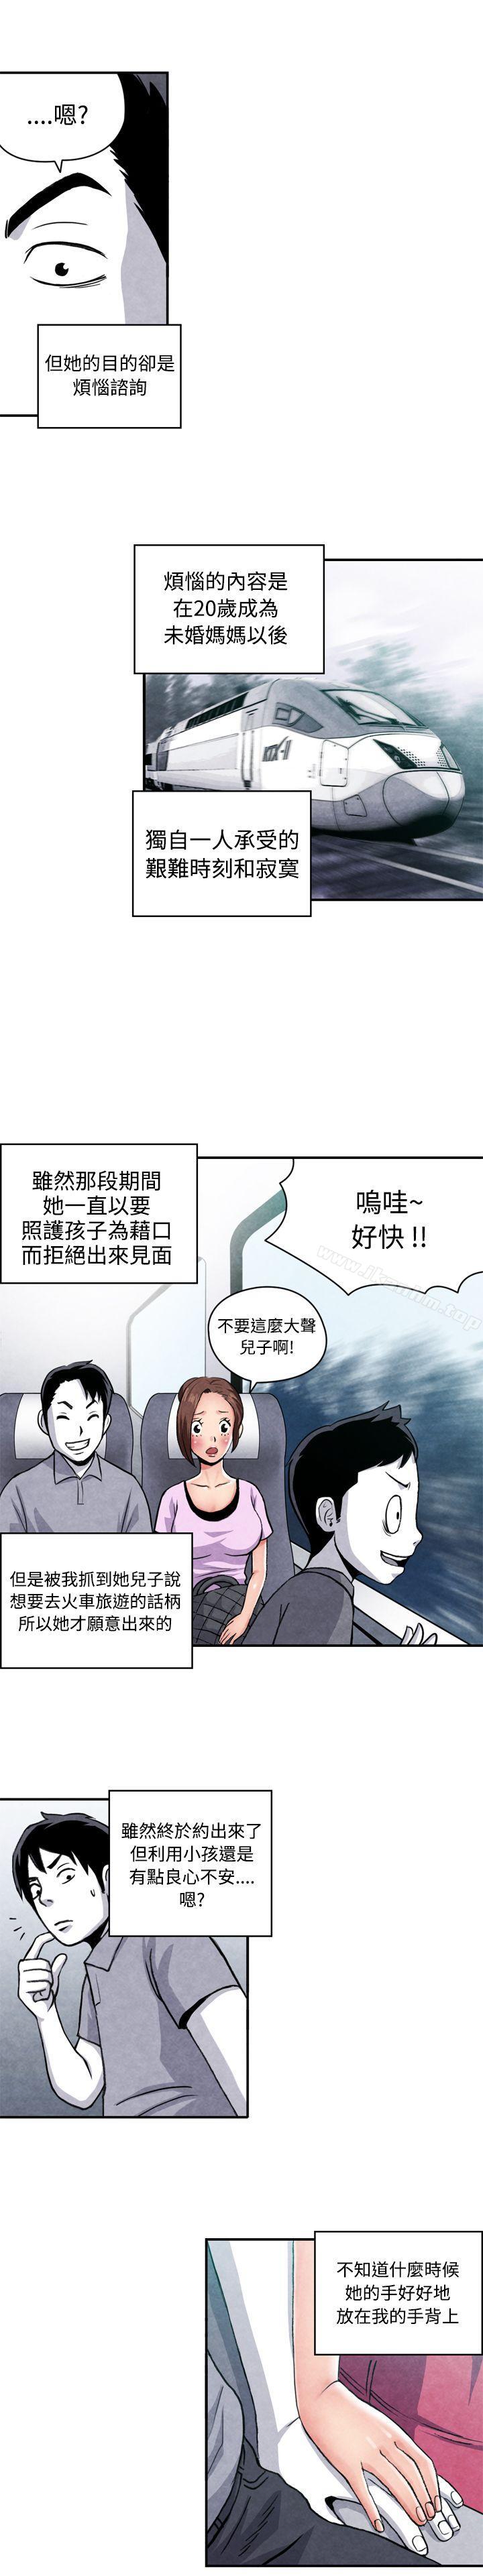 漫画韩国 生物學的女性攻略法   - 立即阅读 生物學的女性攻略法 CASE 07-1. 未婚媽媽和一日爸爸第4漫画图片